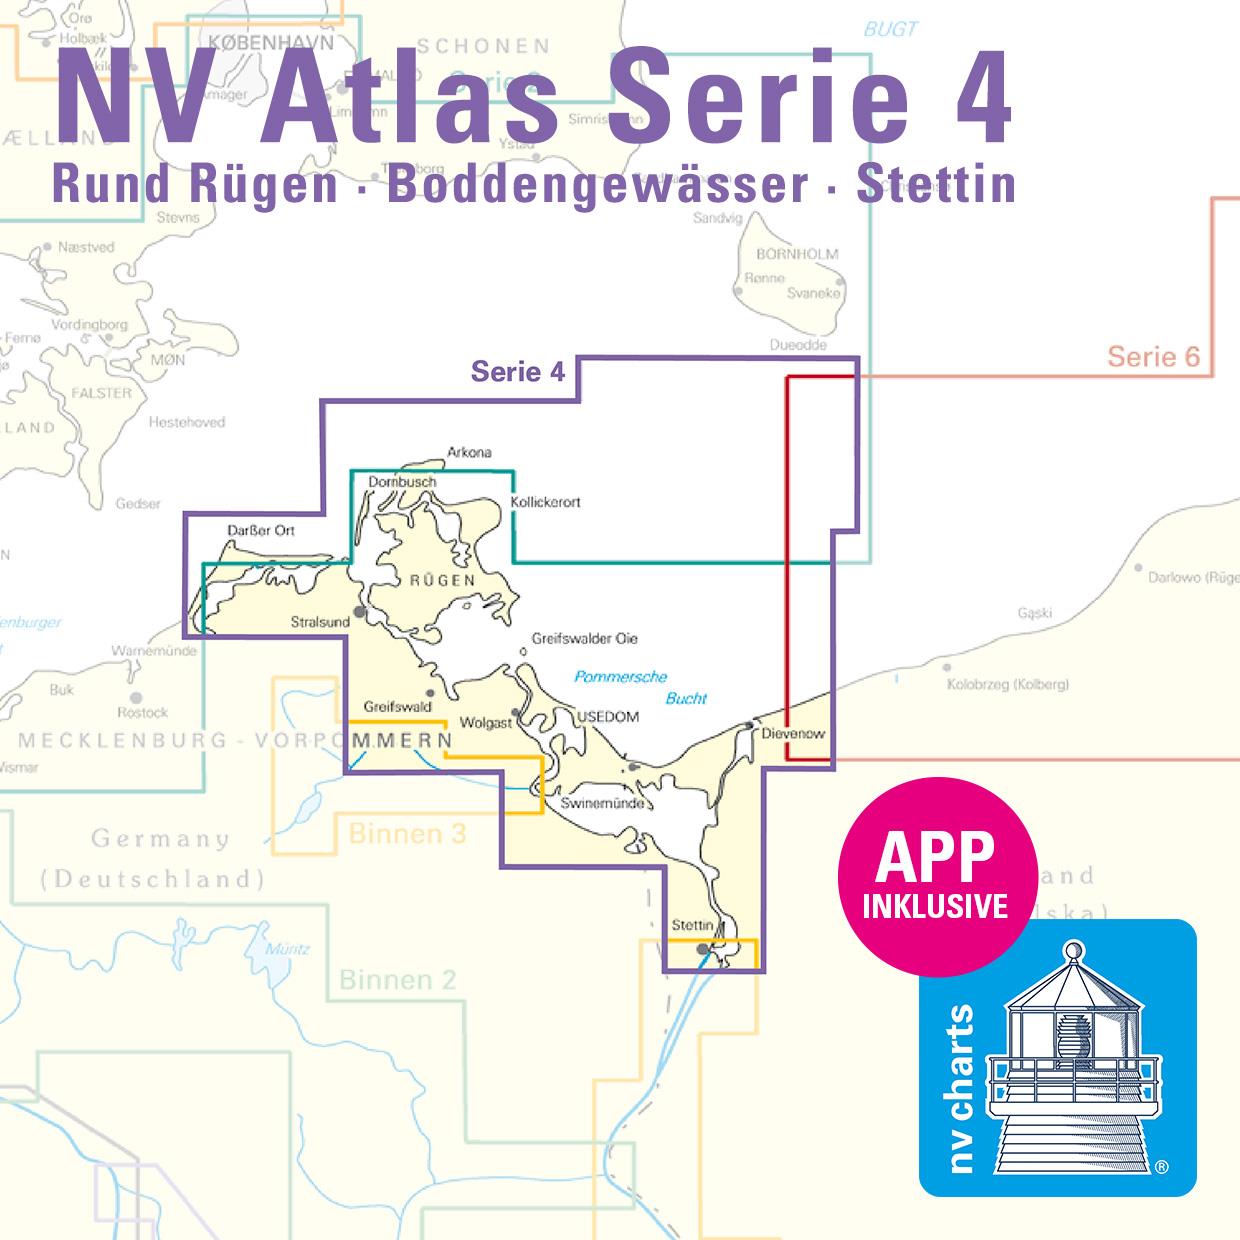 NV Charts Baltic Serie 4 Plano - Rund Rügen - Boddengewässer - Stettin